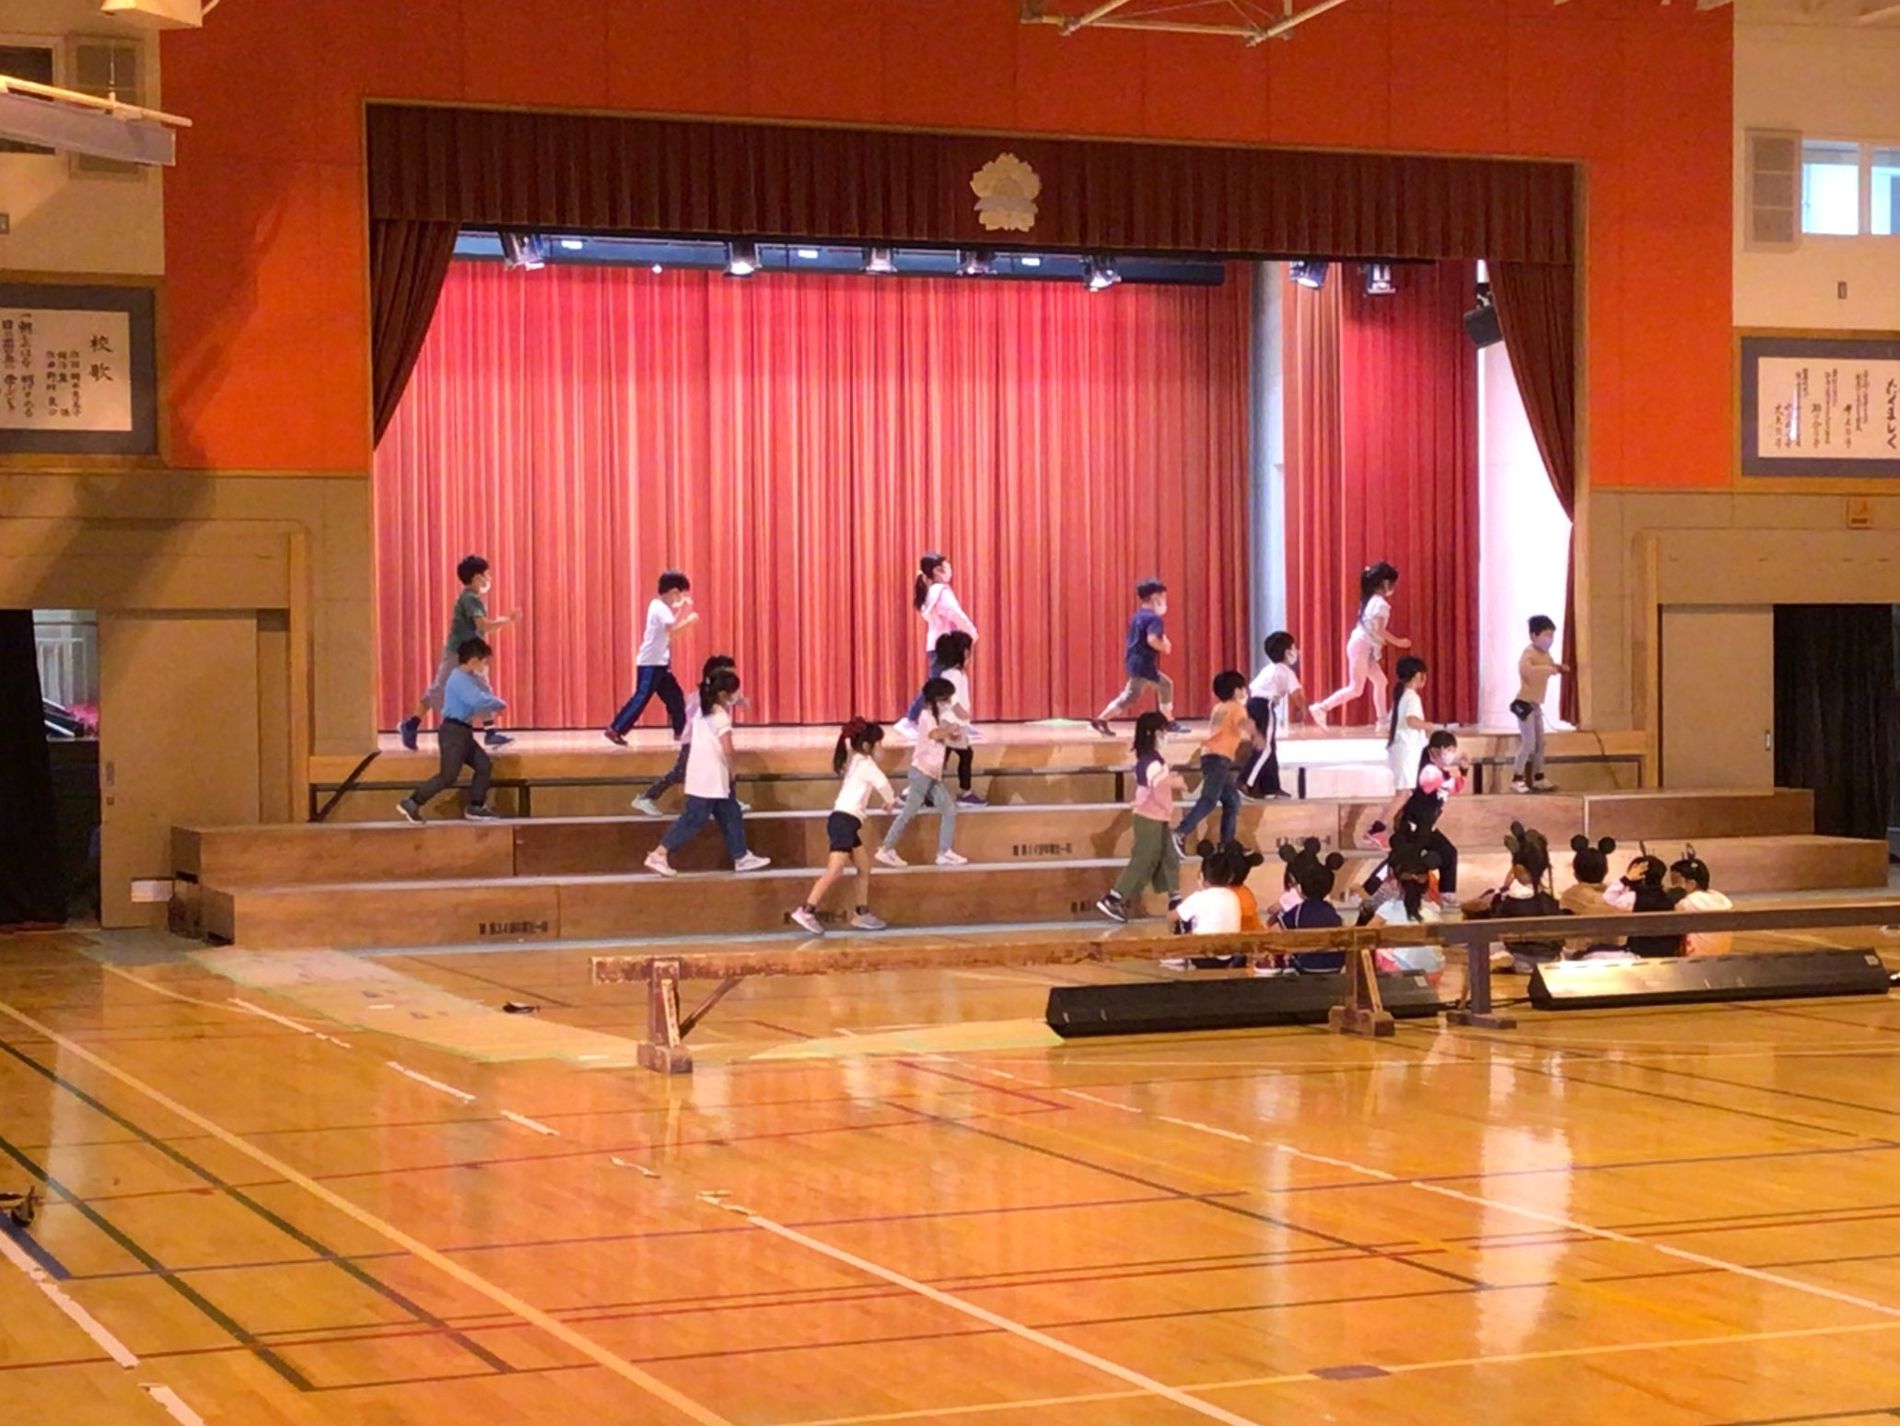 体育館の舞台で四列になり手を前に出して踊りの練習をしている子供たちと、それを間近で見ている体育座りをした子供たちの写真